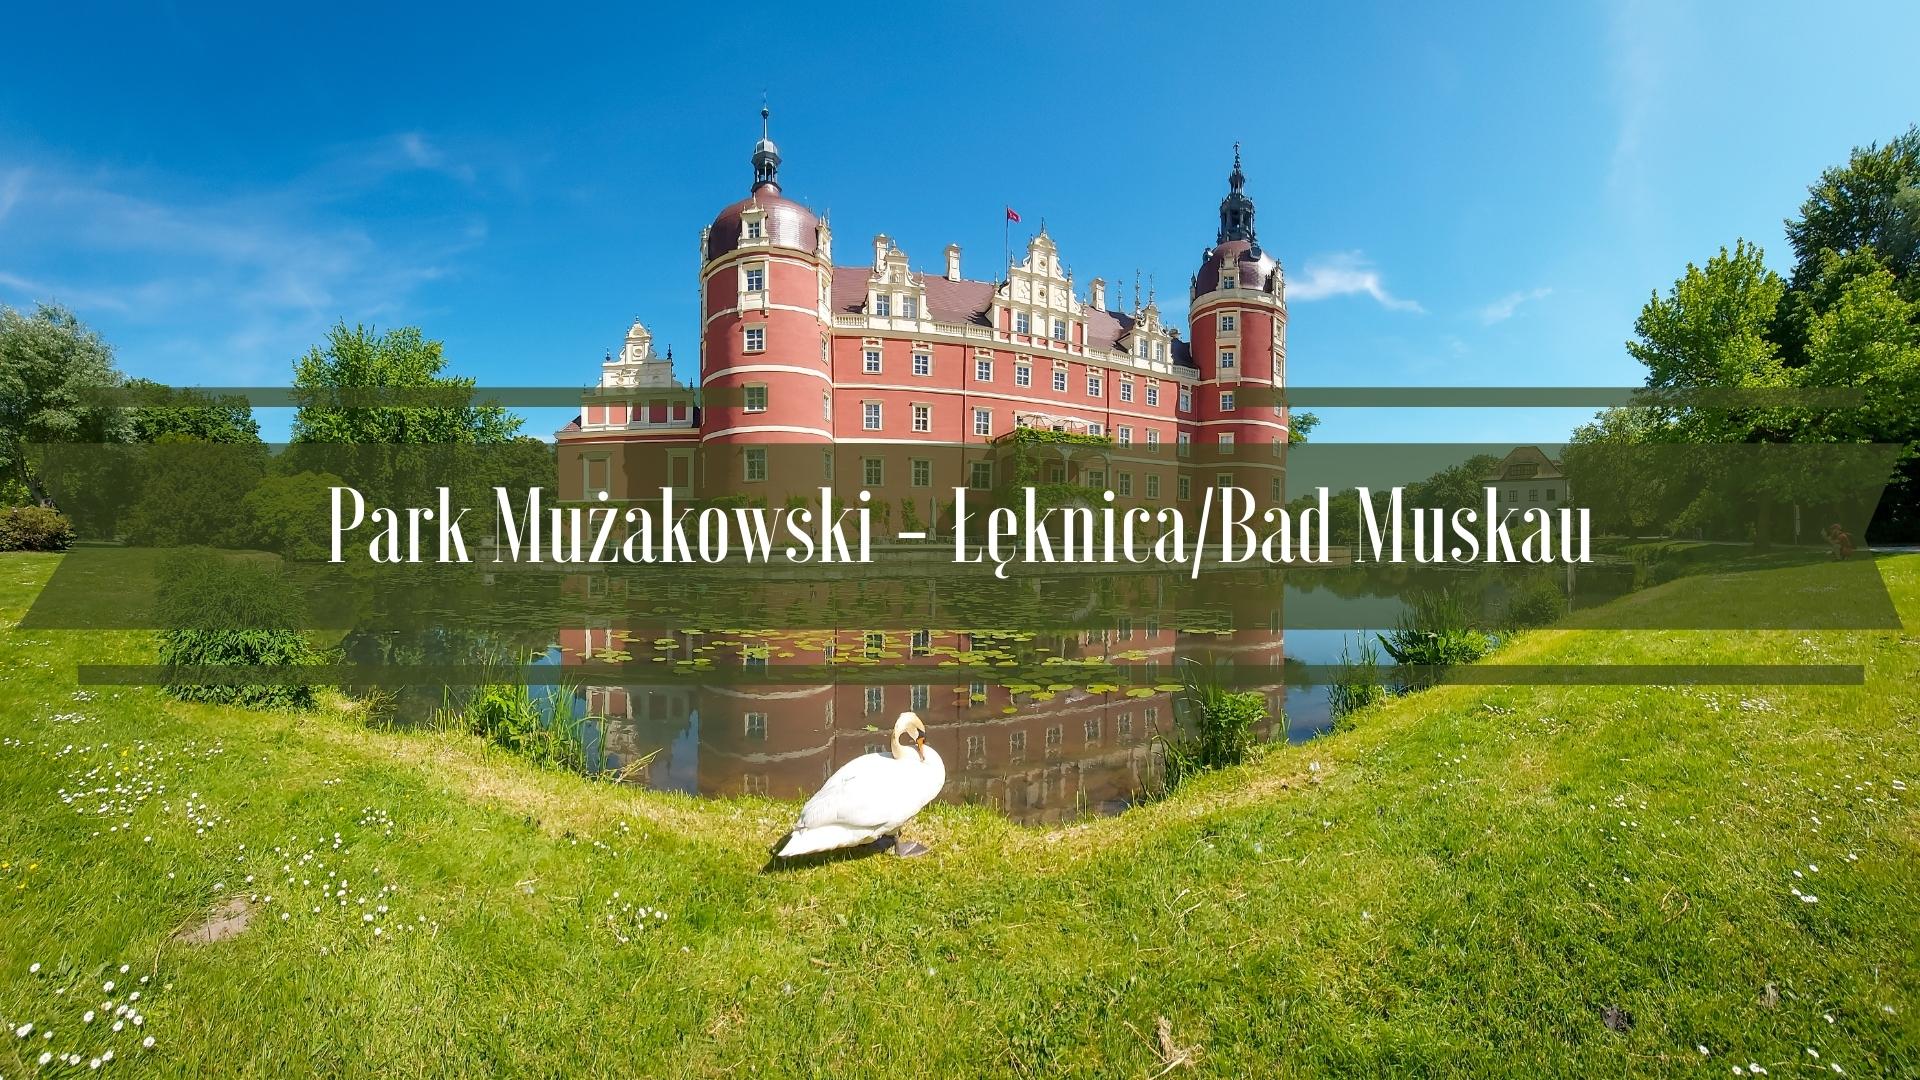 Park Mużakowski - Zamek Muskau